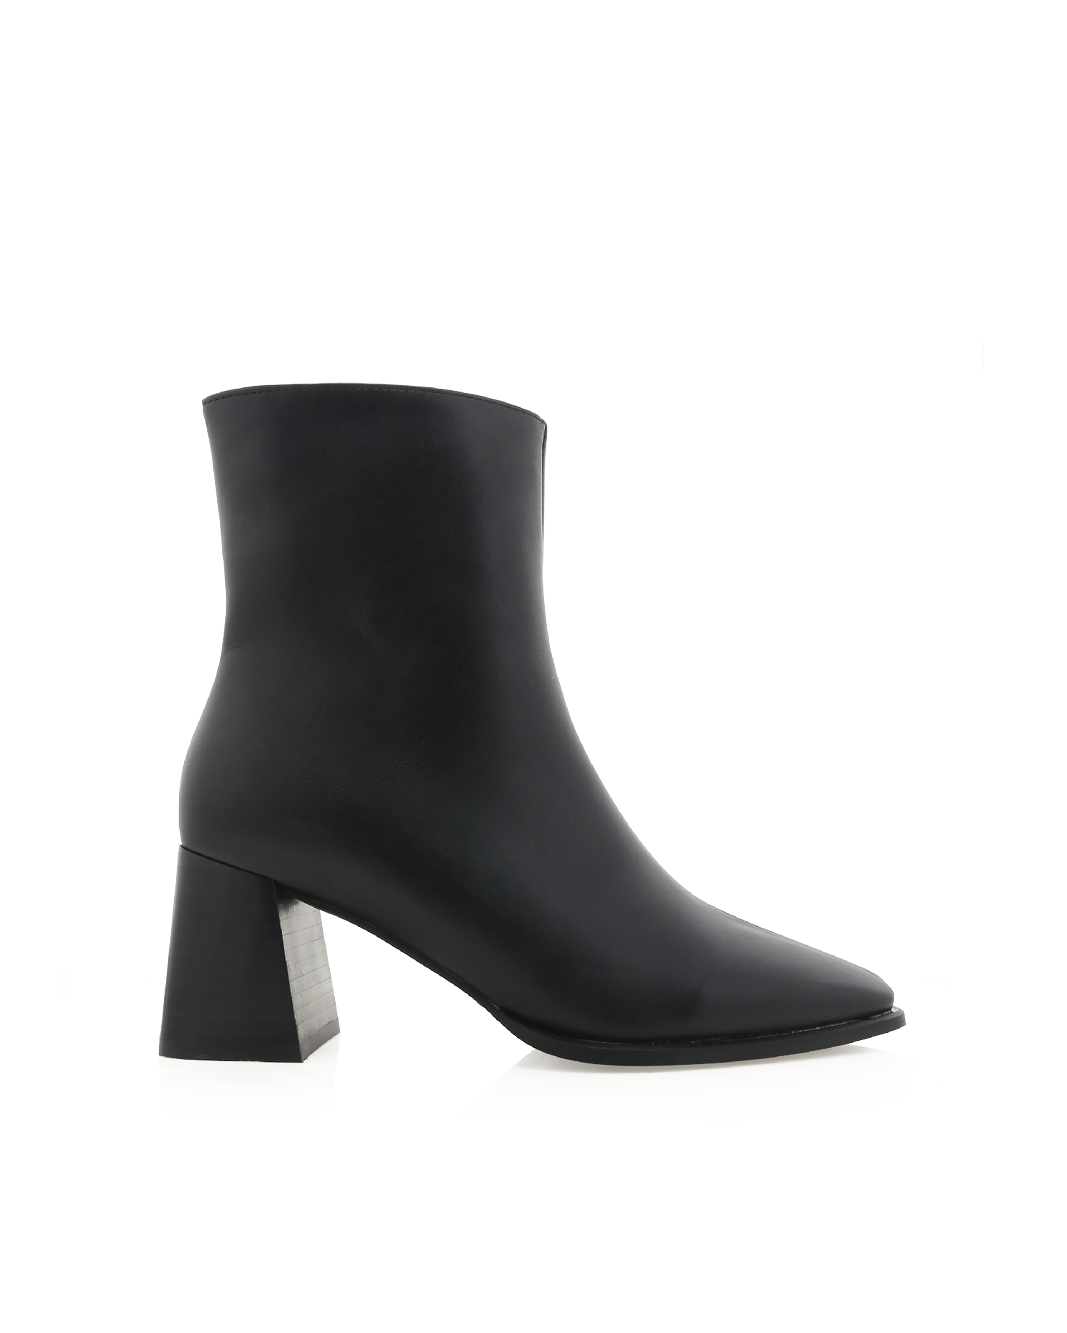 ALANIA - BLACK-Boots-Billini-Billini